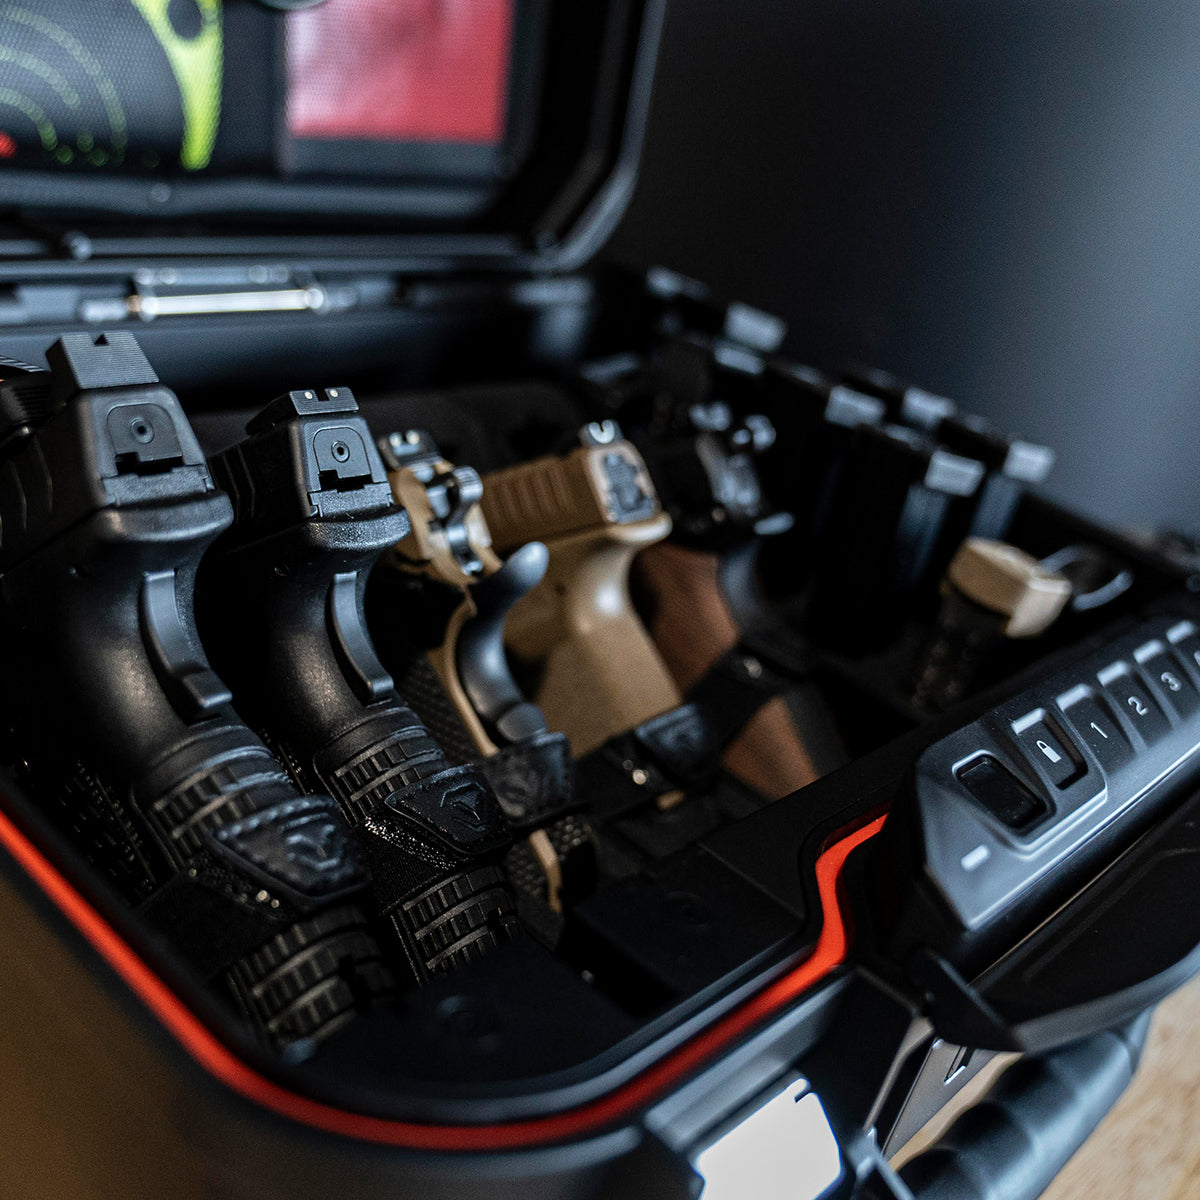 Vaultek Lifepod XT2i High Capacity Weather Resistant Firearm Case Enthusiast Model Open